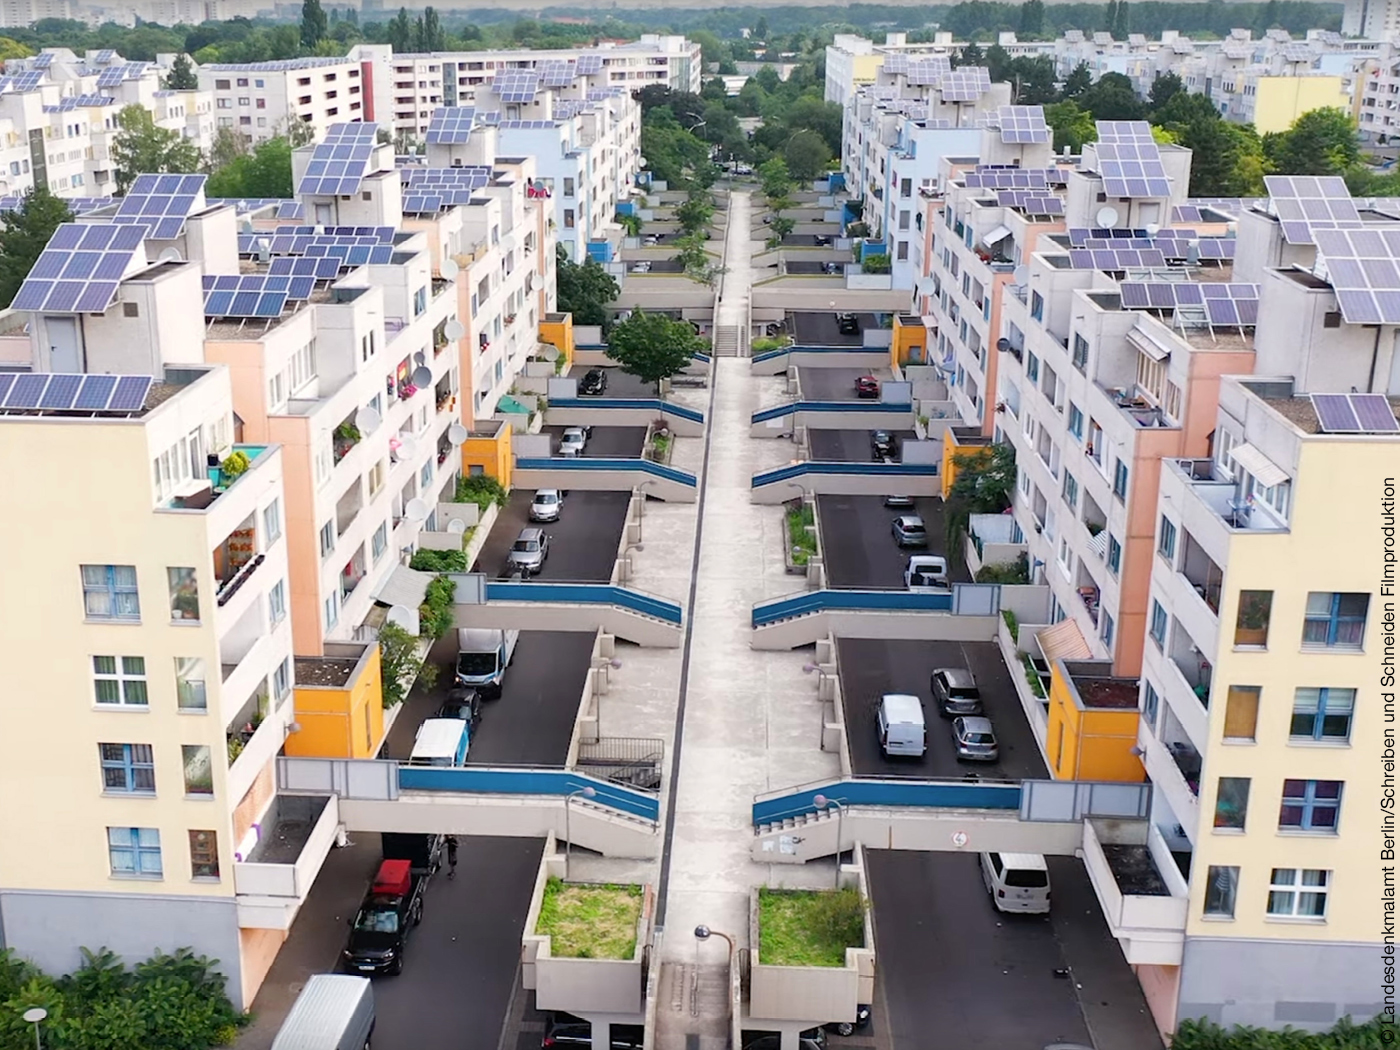 Highdeck-Siedlung mit Fußgängerbrücken und Solarzellen auf den Dächern